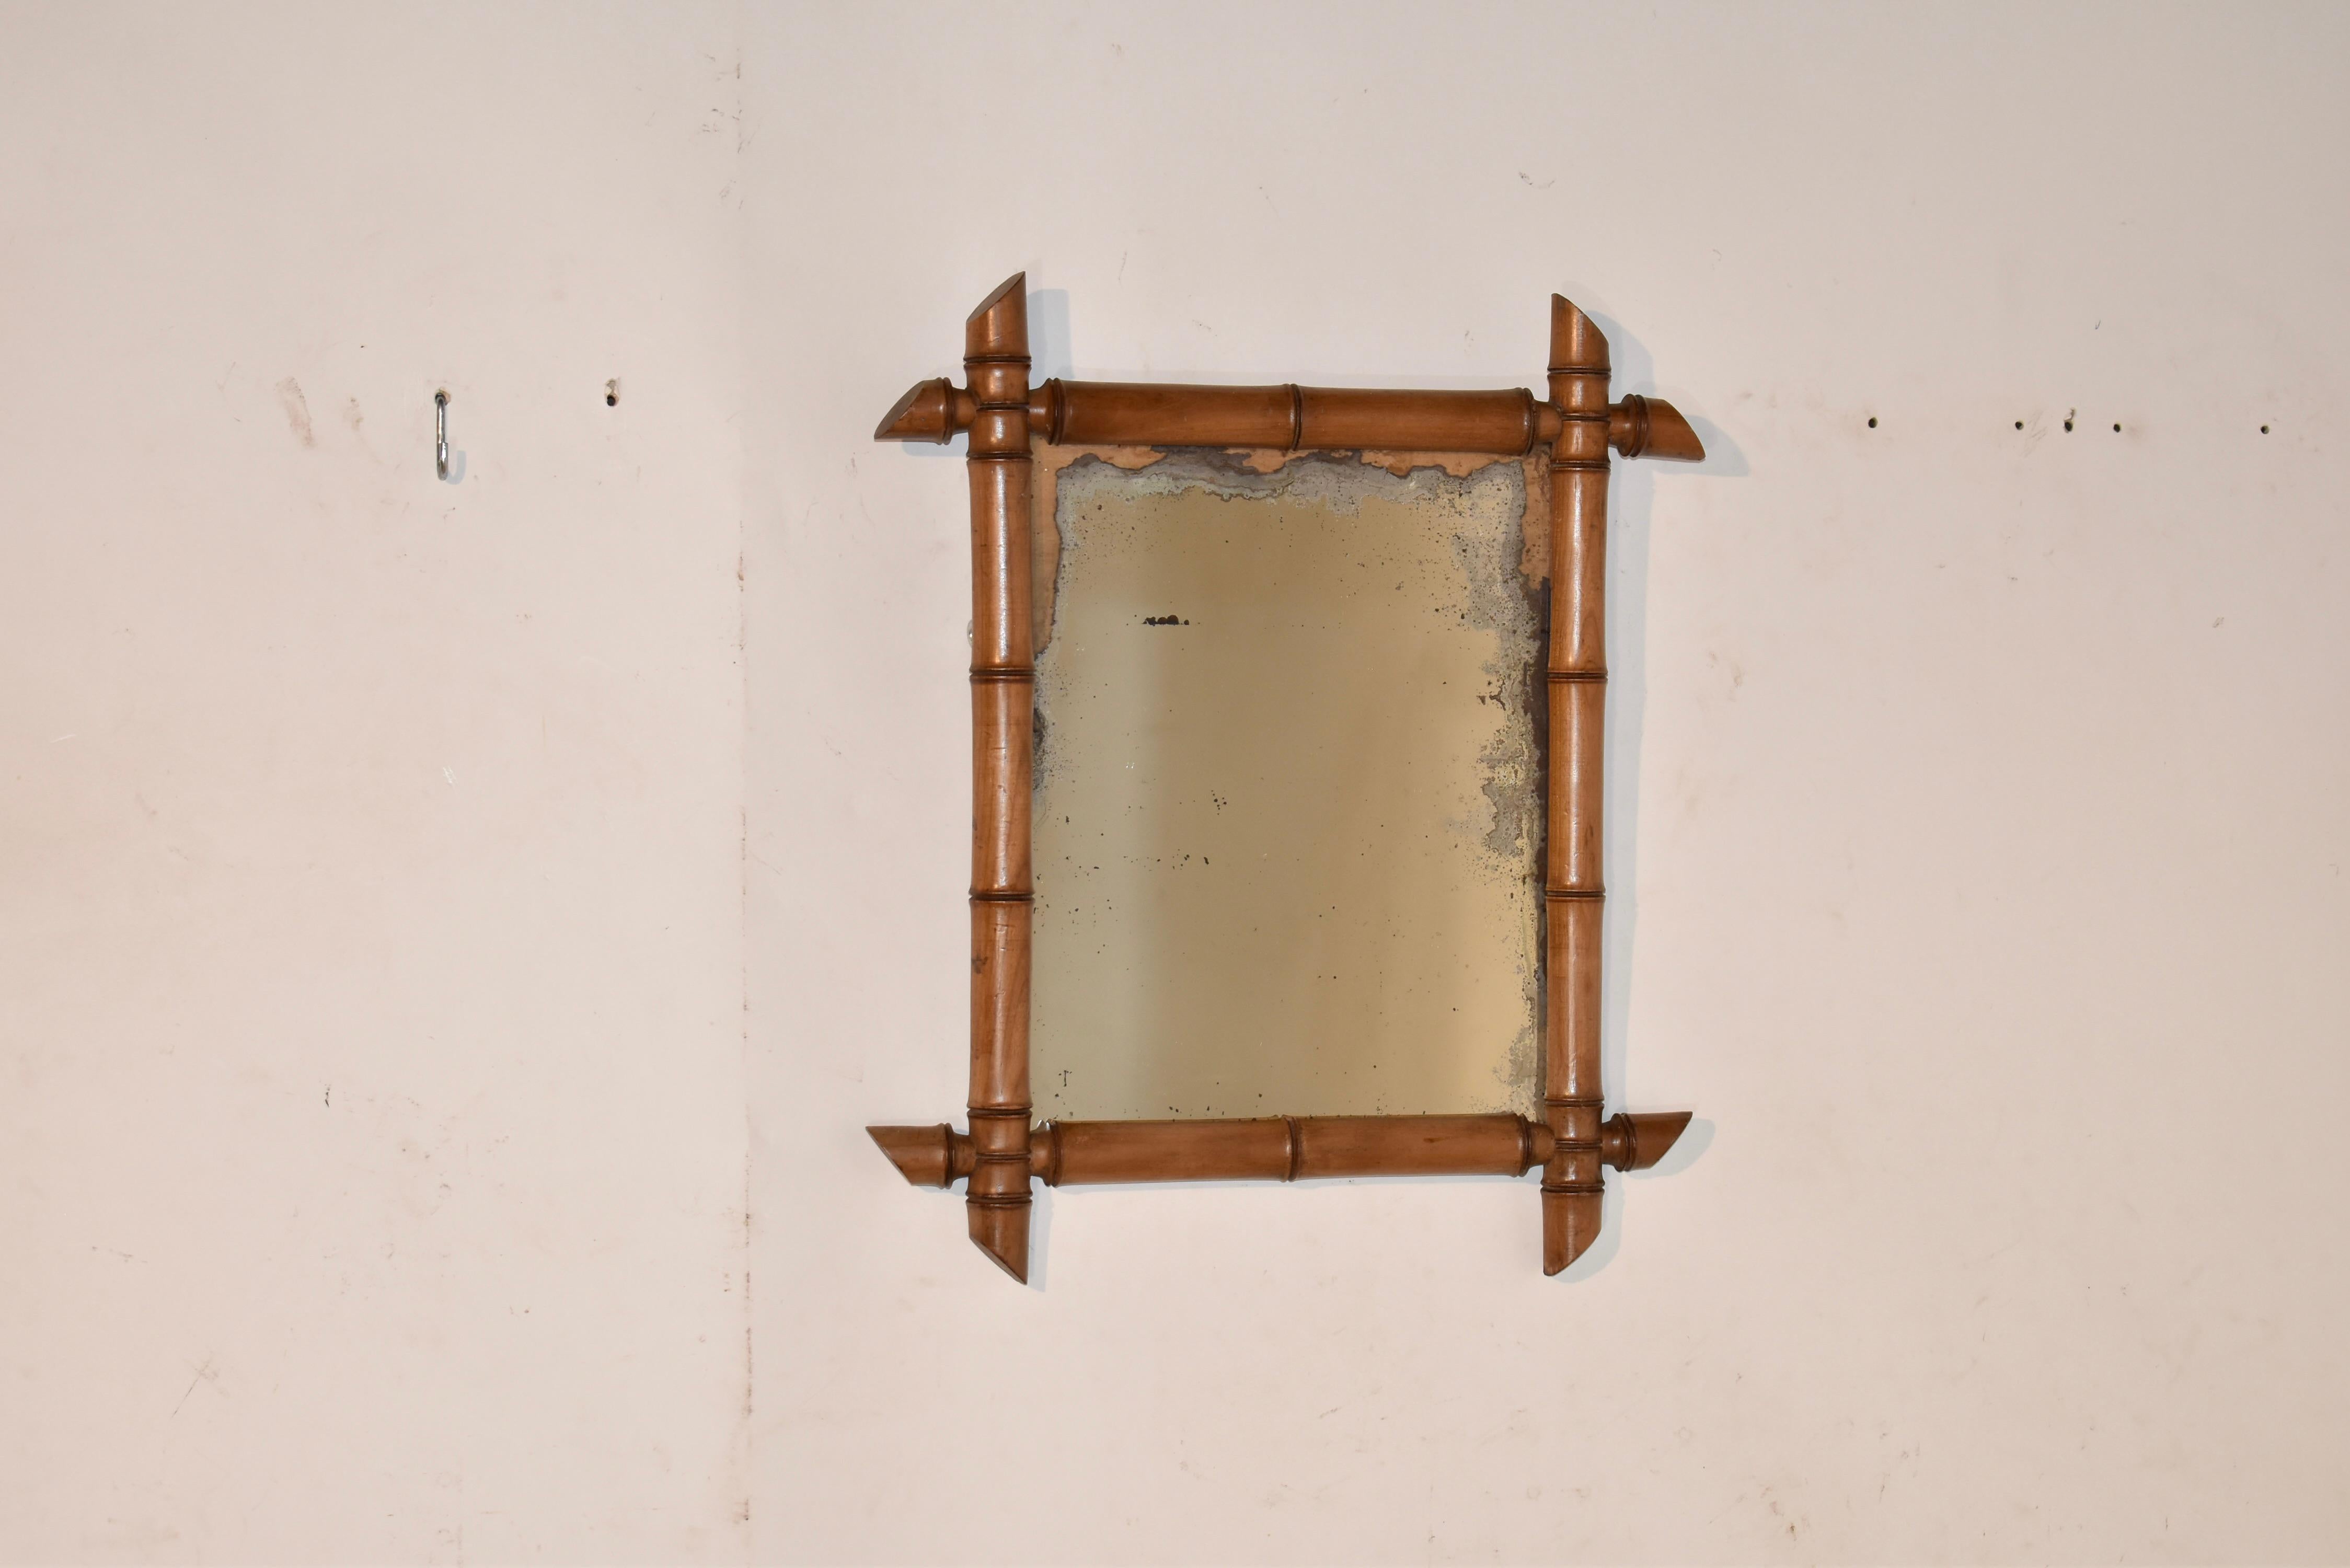 Französischer Wandspiegel im Stil einer Bambusimitation.  Der Spiegelrahmen ist von Hand gedrechselt und sieht aus wie eine Bambusimitation. Er umgibt den scheinbar originalen Spiegel, dem ein großer Teil seiner Quecksilberoberfläche fehlt.  Dieser